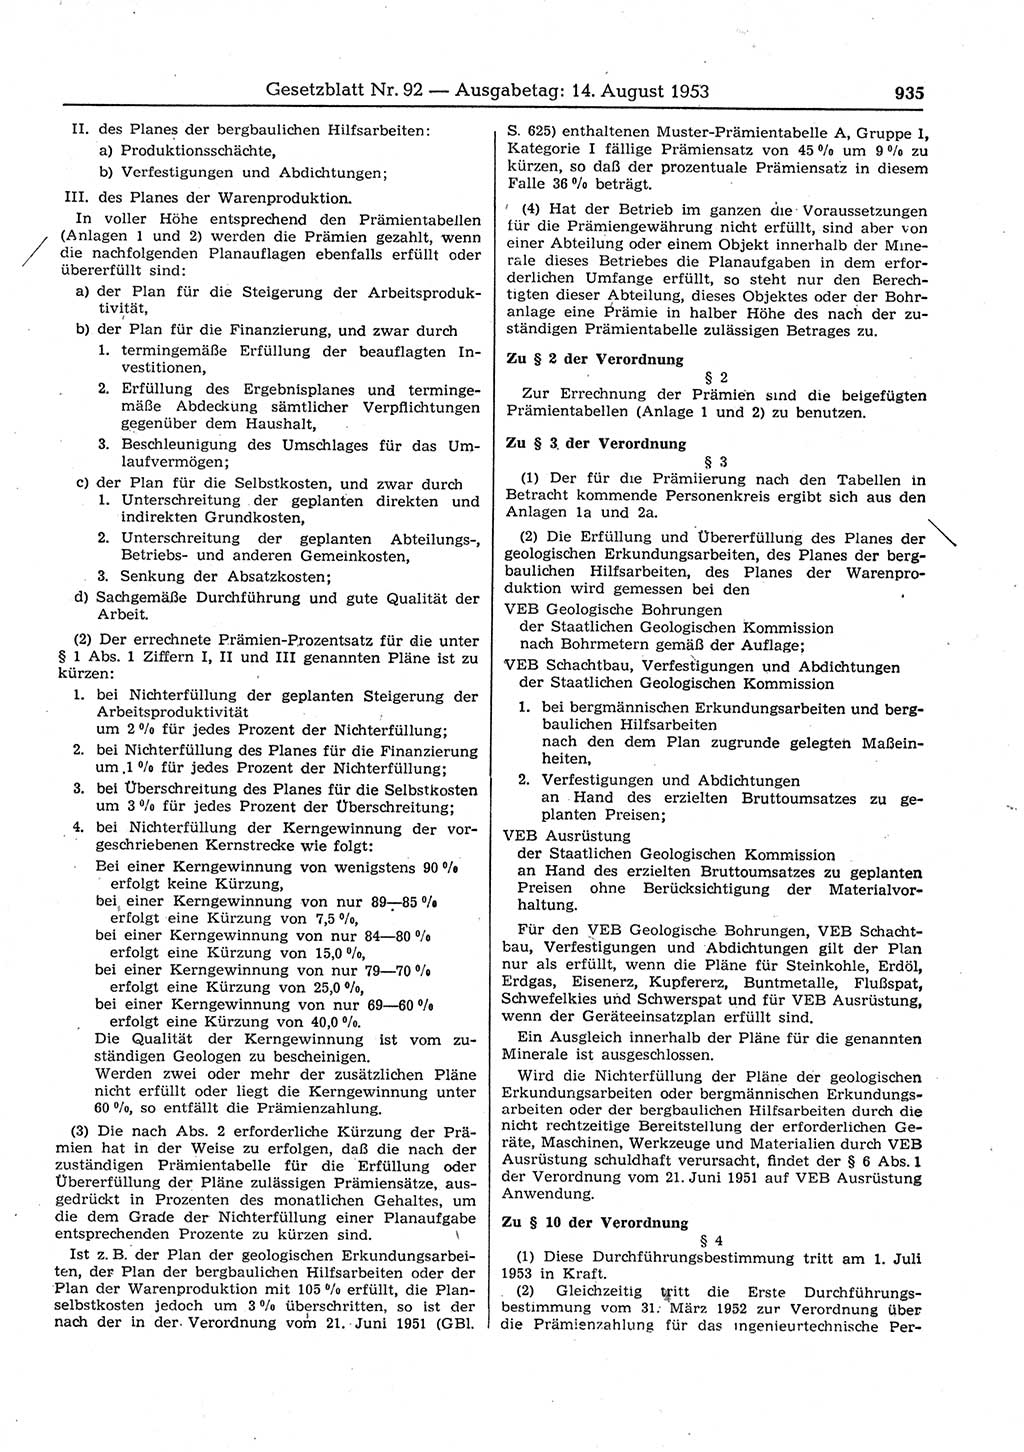 Gesetzblatt (GBl.) der Deutschen Demokratischen Republik (DDR) 1953, Seite 935 (GBl. DDR 1953, S. 935)